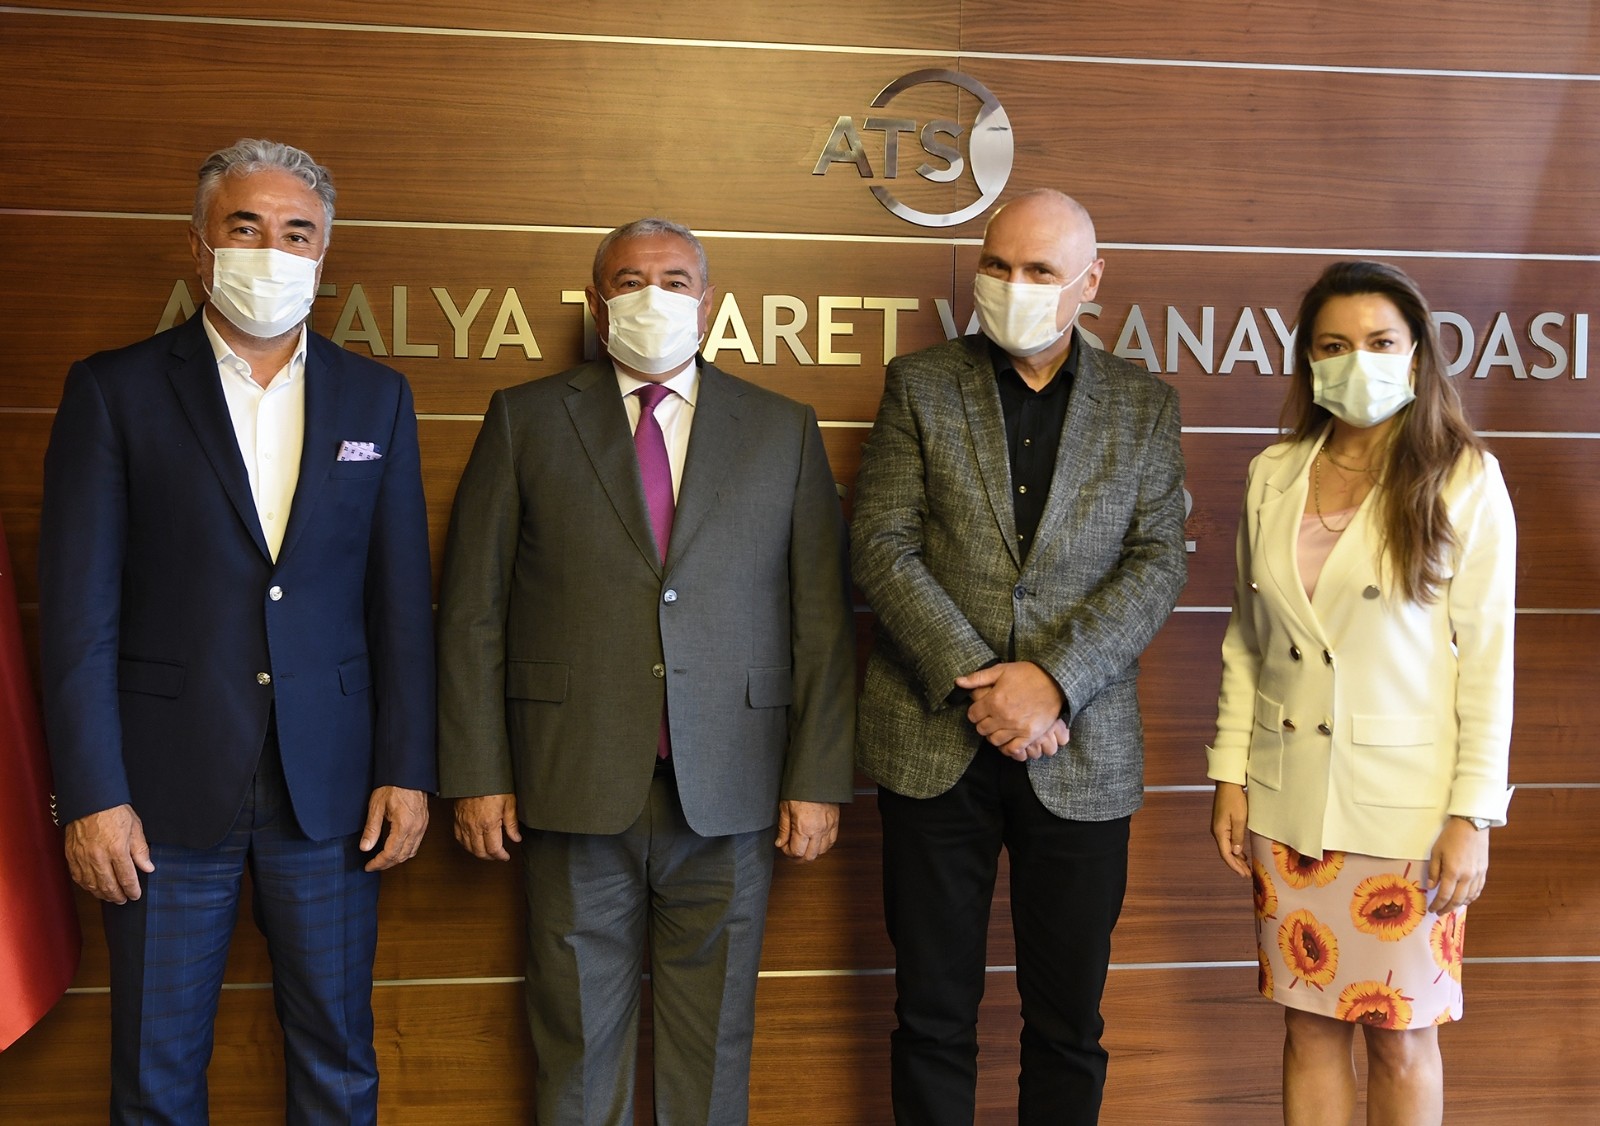 Pandemi, Antalya’ya yatırım yapan yabancı sermayeyi durdurmadı